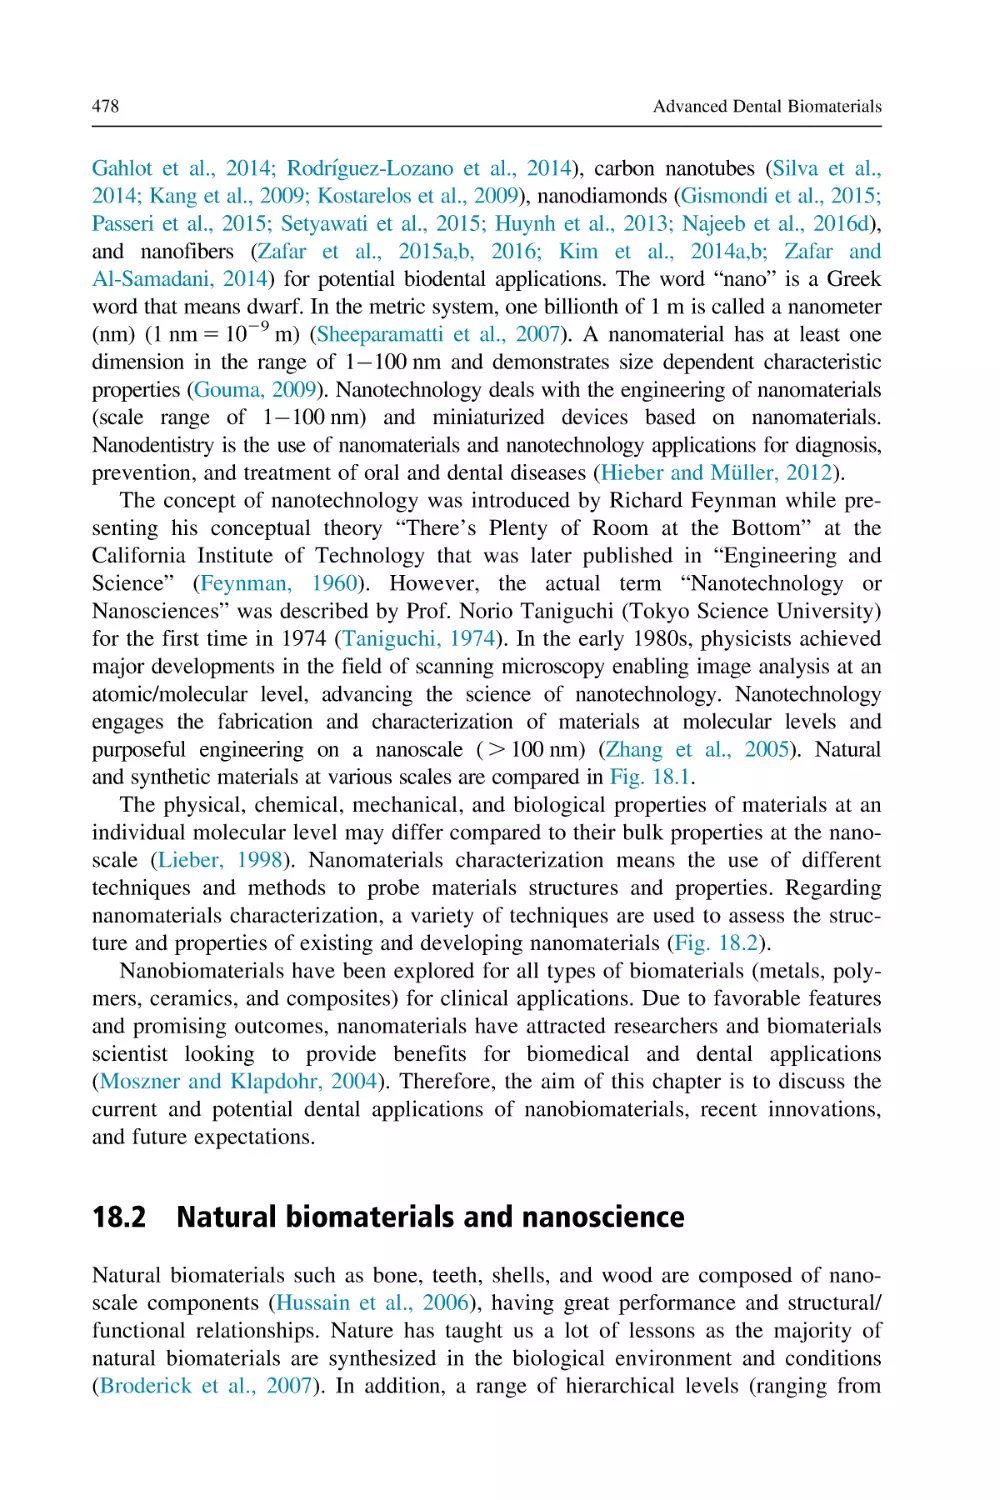 18.2 Natural biomaterials and nanoscience